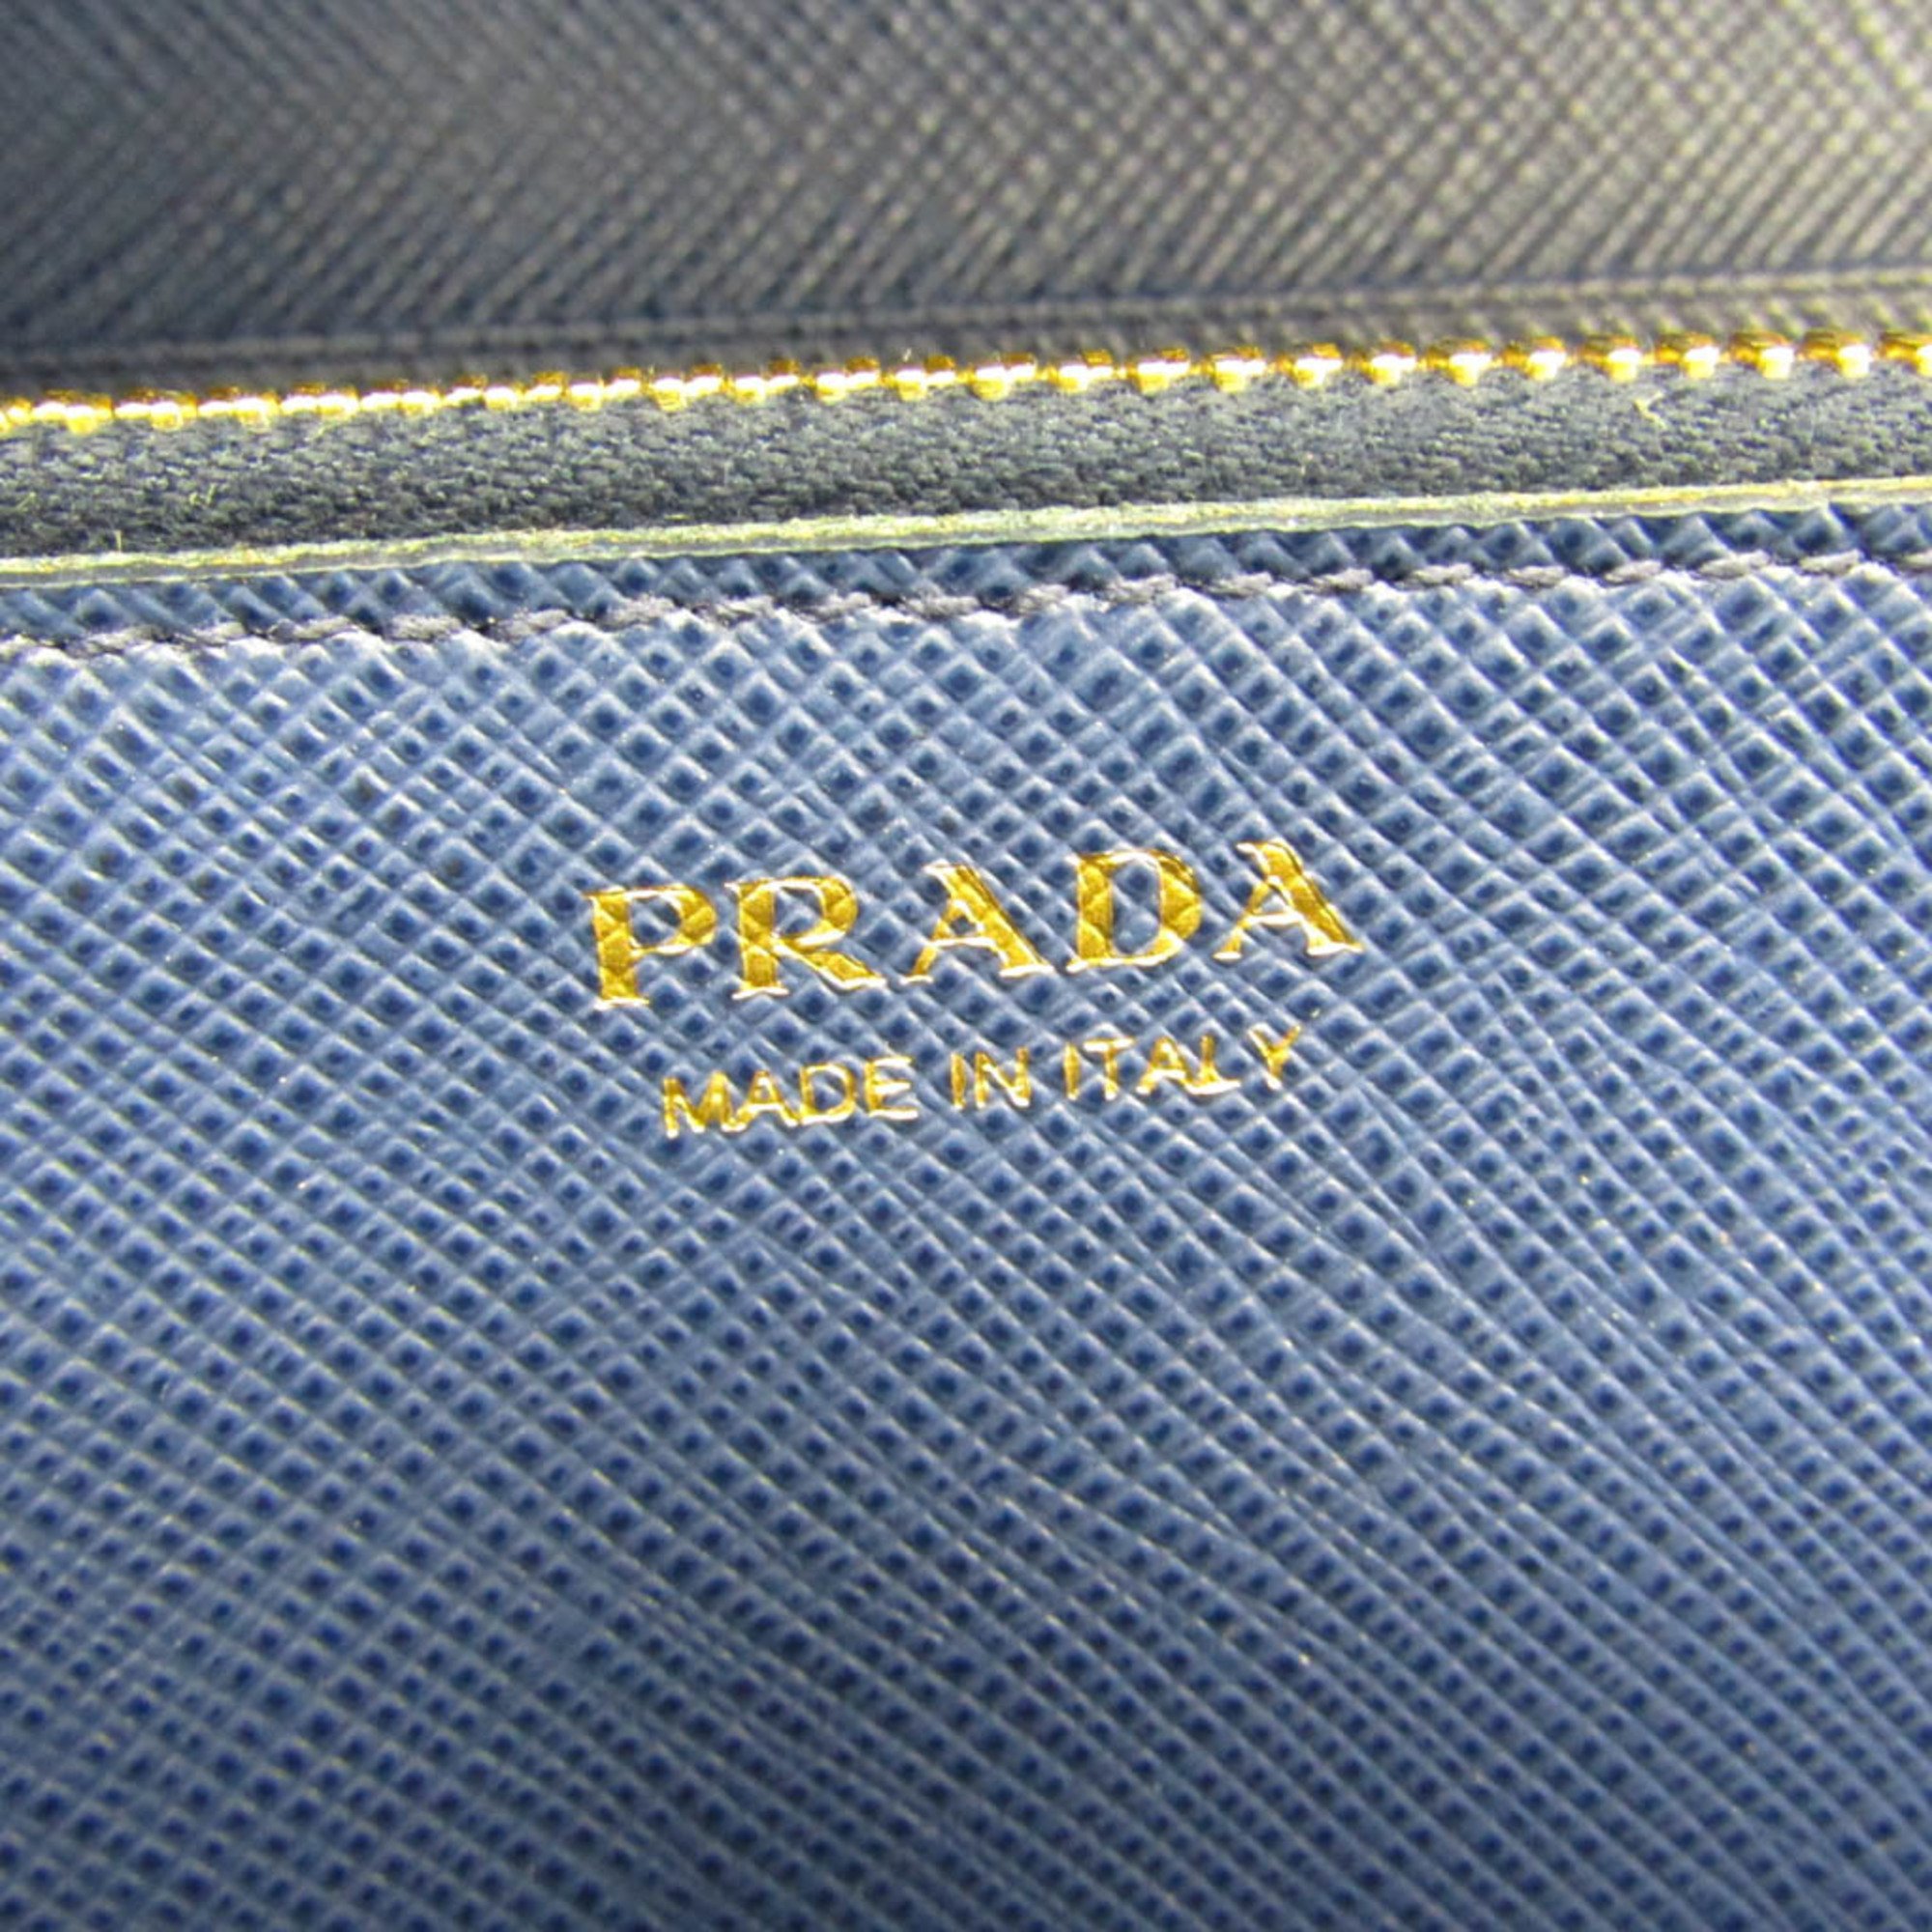 プラダ(Prada) サフィアーノ フィオッコリボン 1MH132 レディース Saffiano 長財布（二つ折り） Bluette(ブリエッタ)